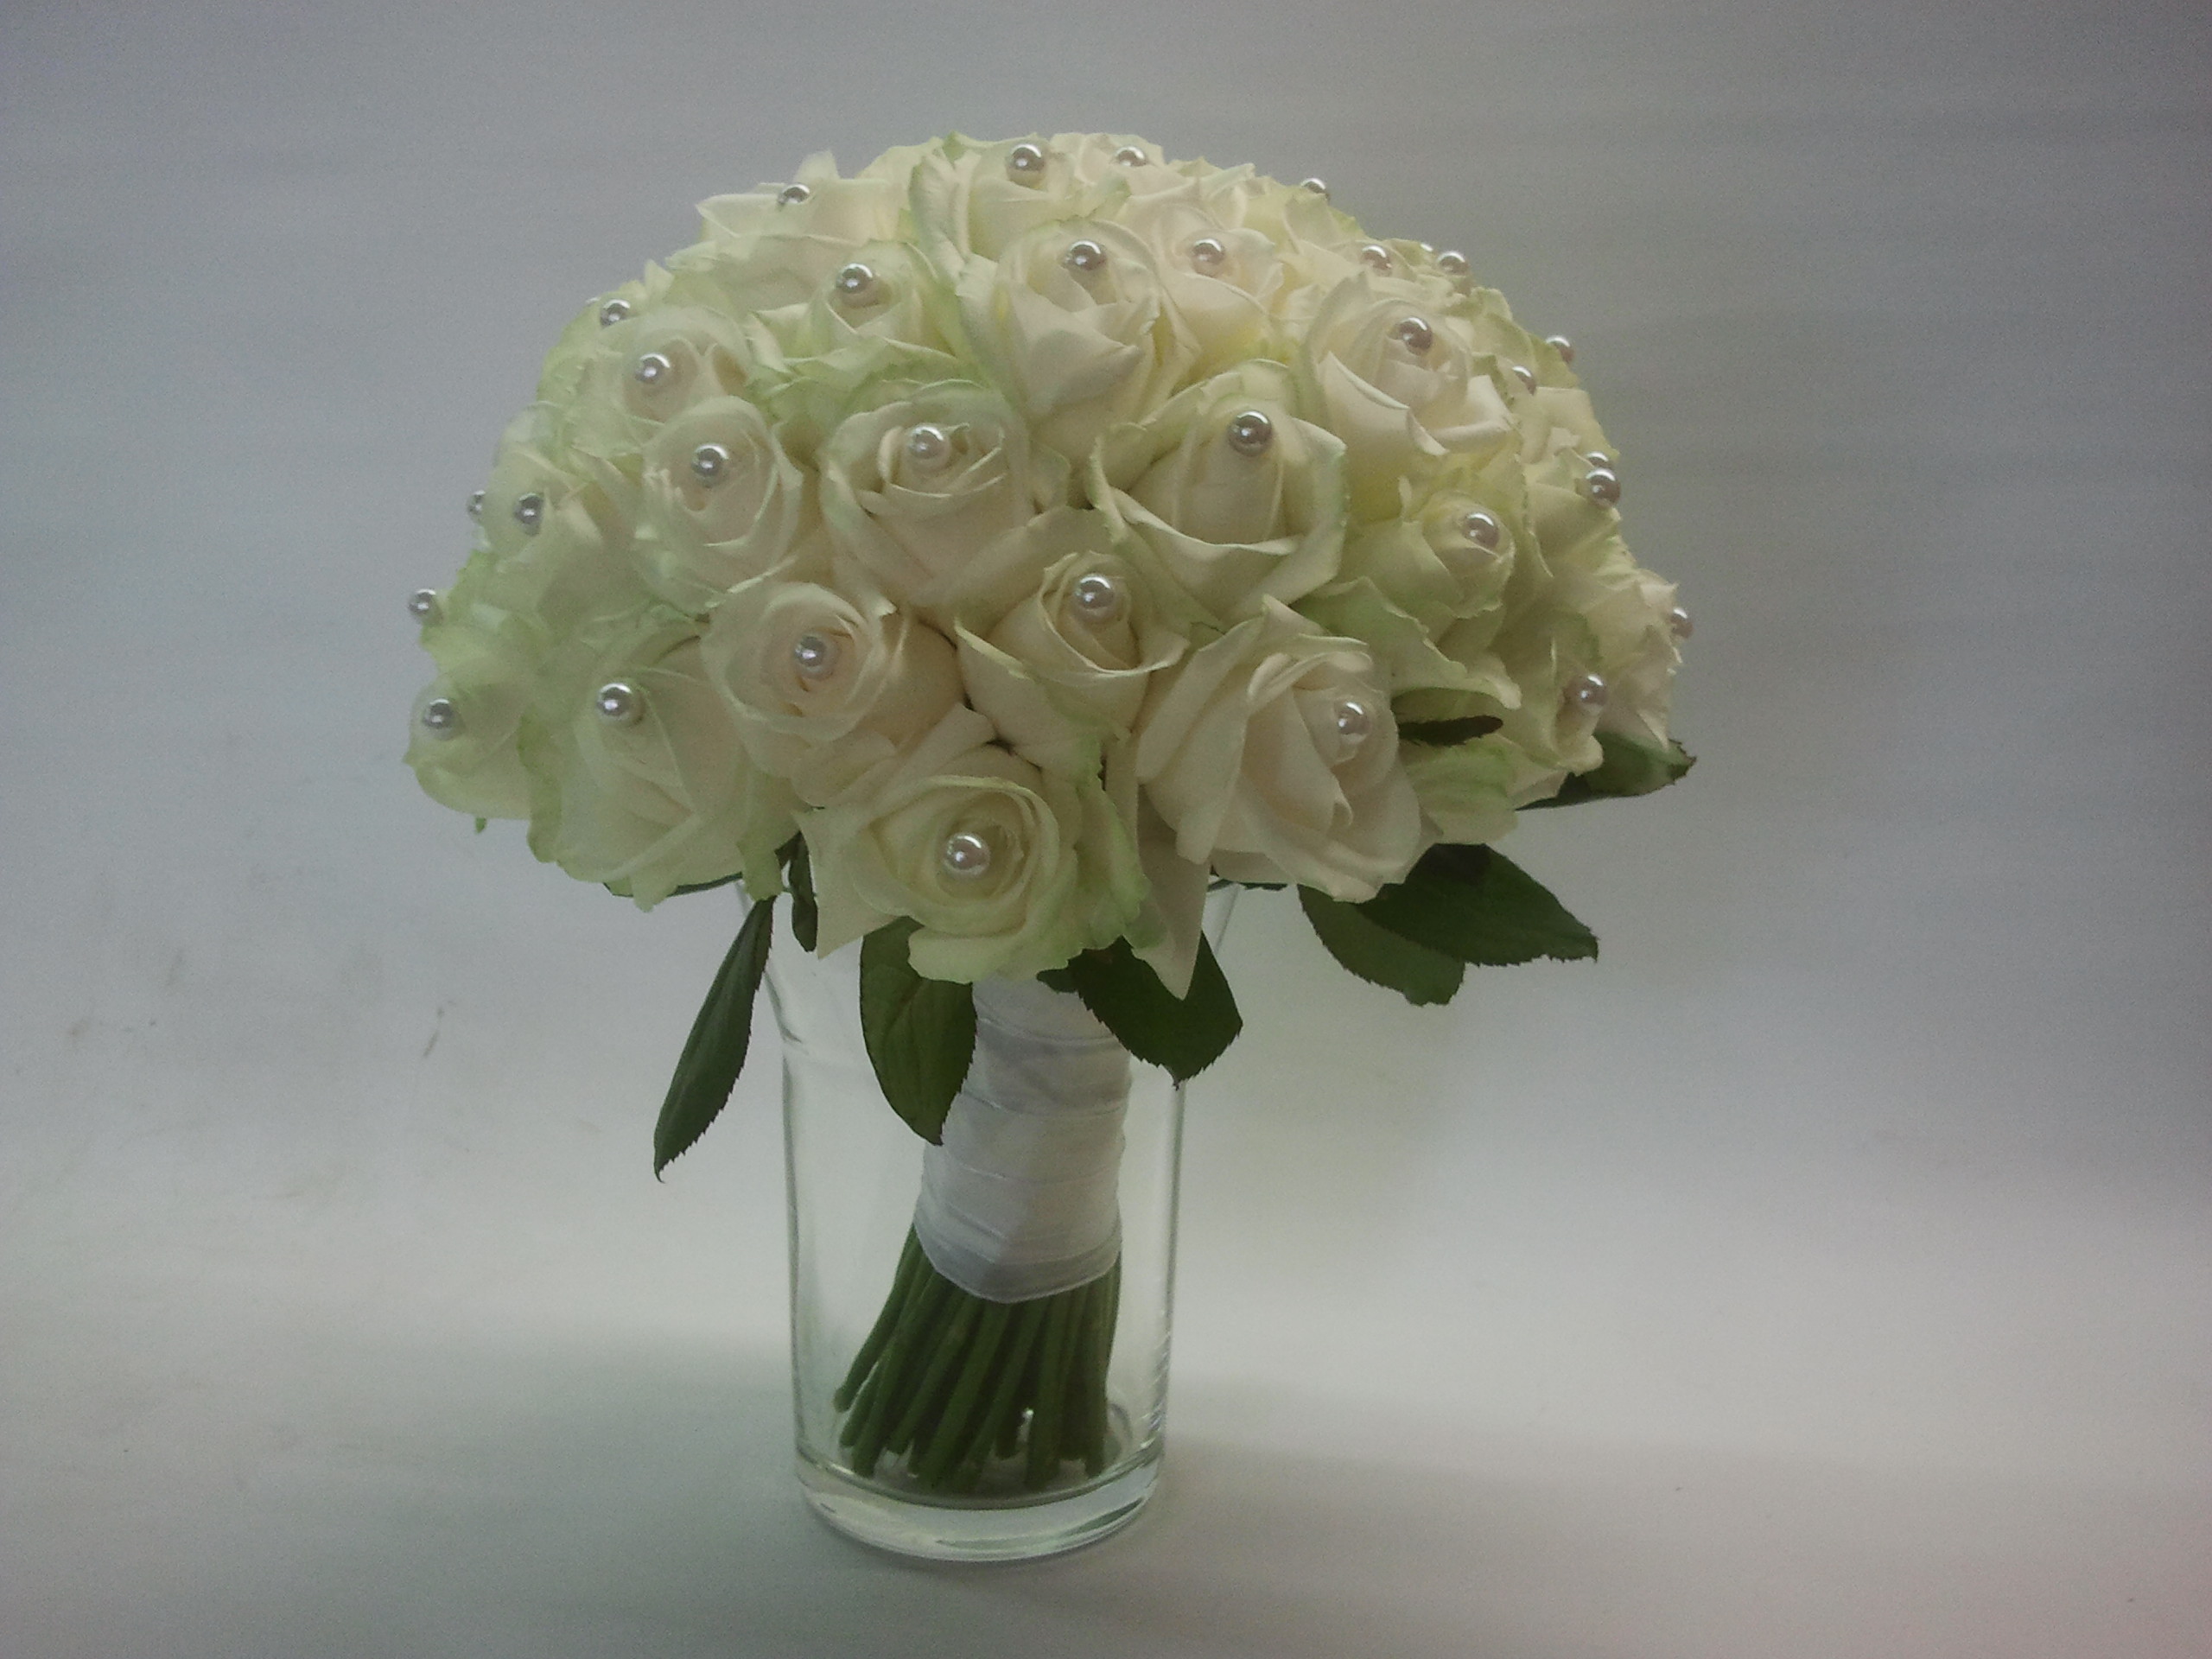 Super goed beeld Marine 018 Bruidsboeket witte rozen